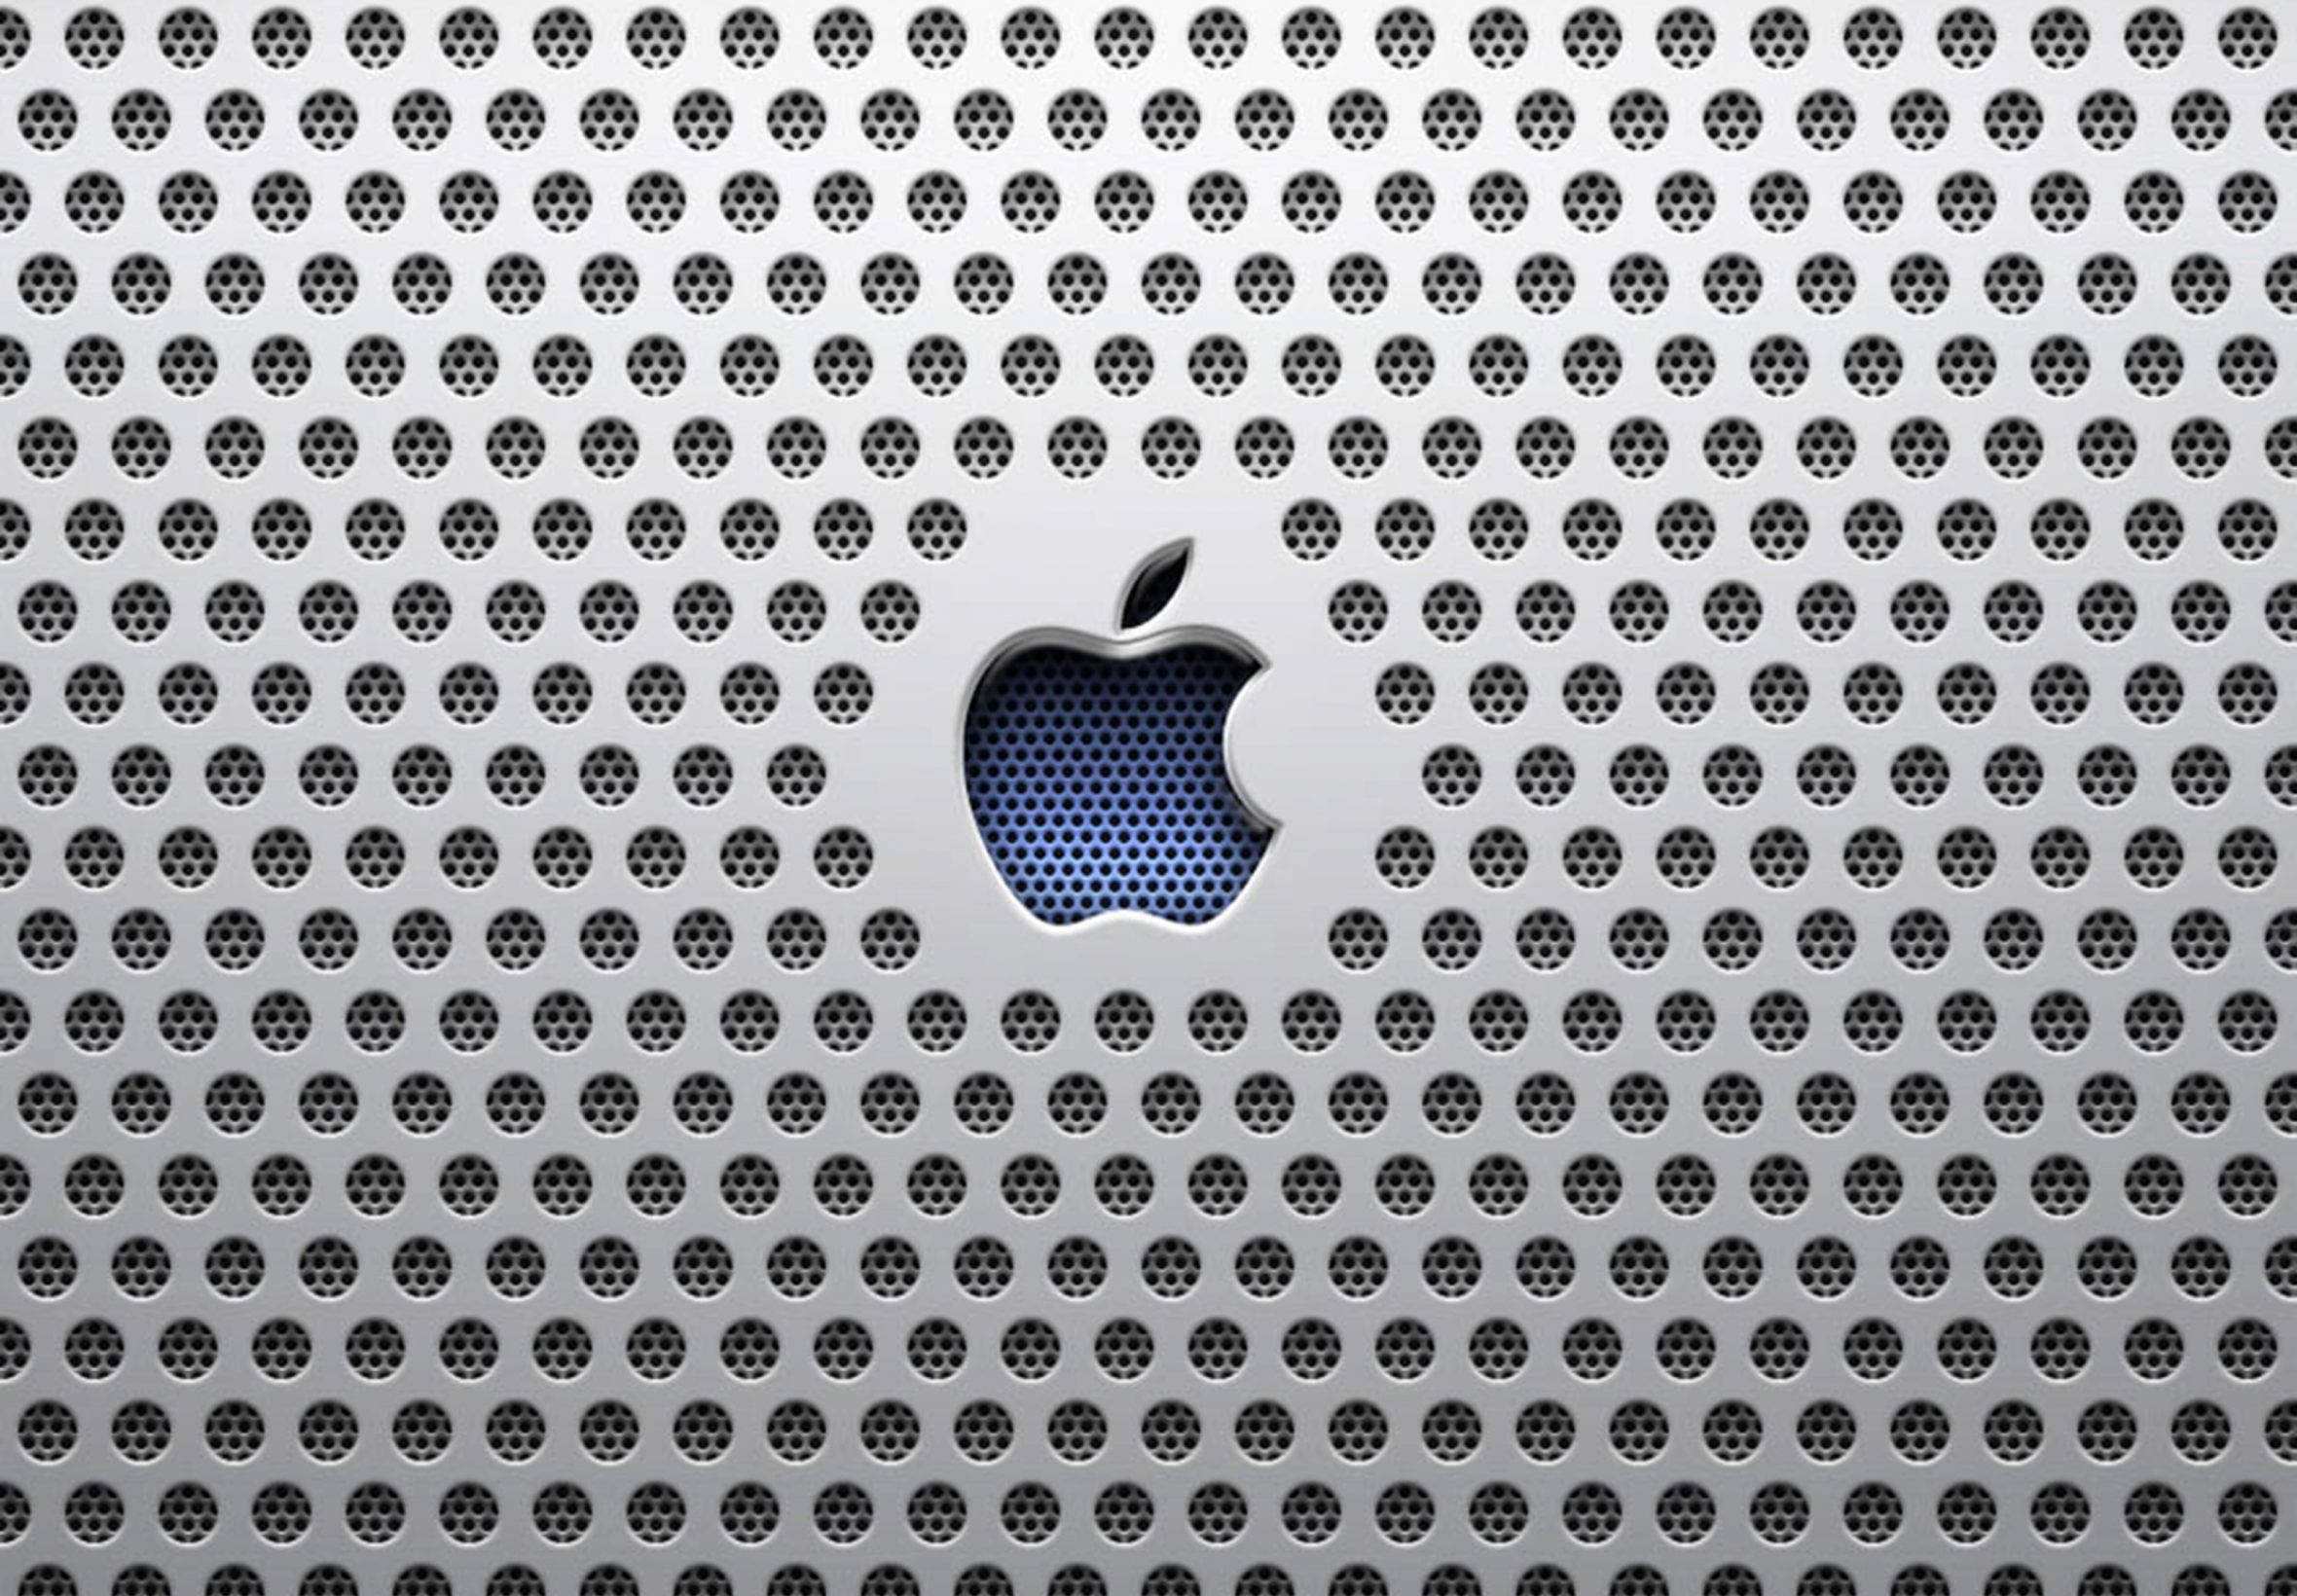 2360x1640 iPad Air wallpaper 4k Apple Industrial Ipad Wallpaper 2360x1640 pixels resolution